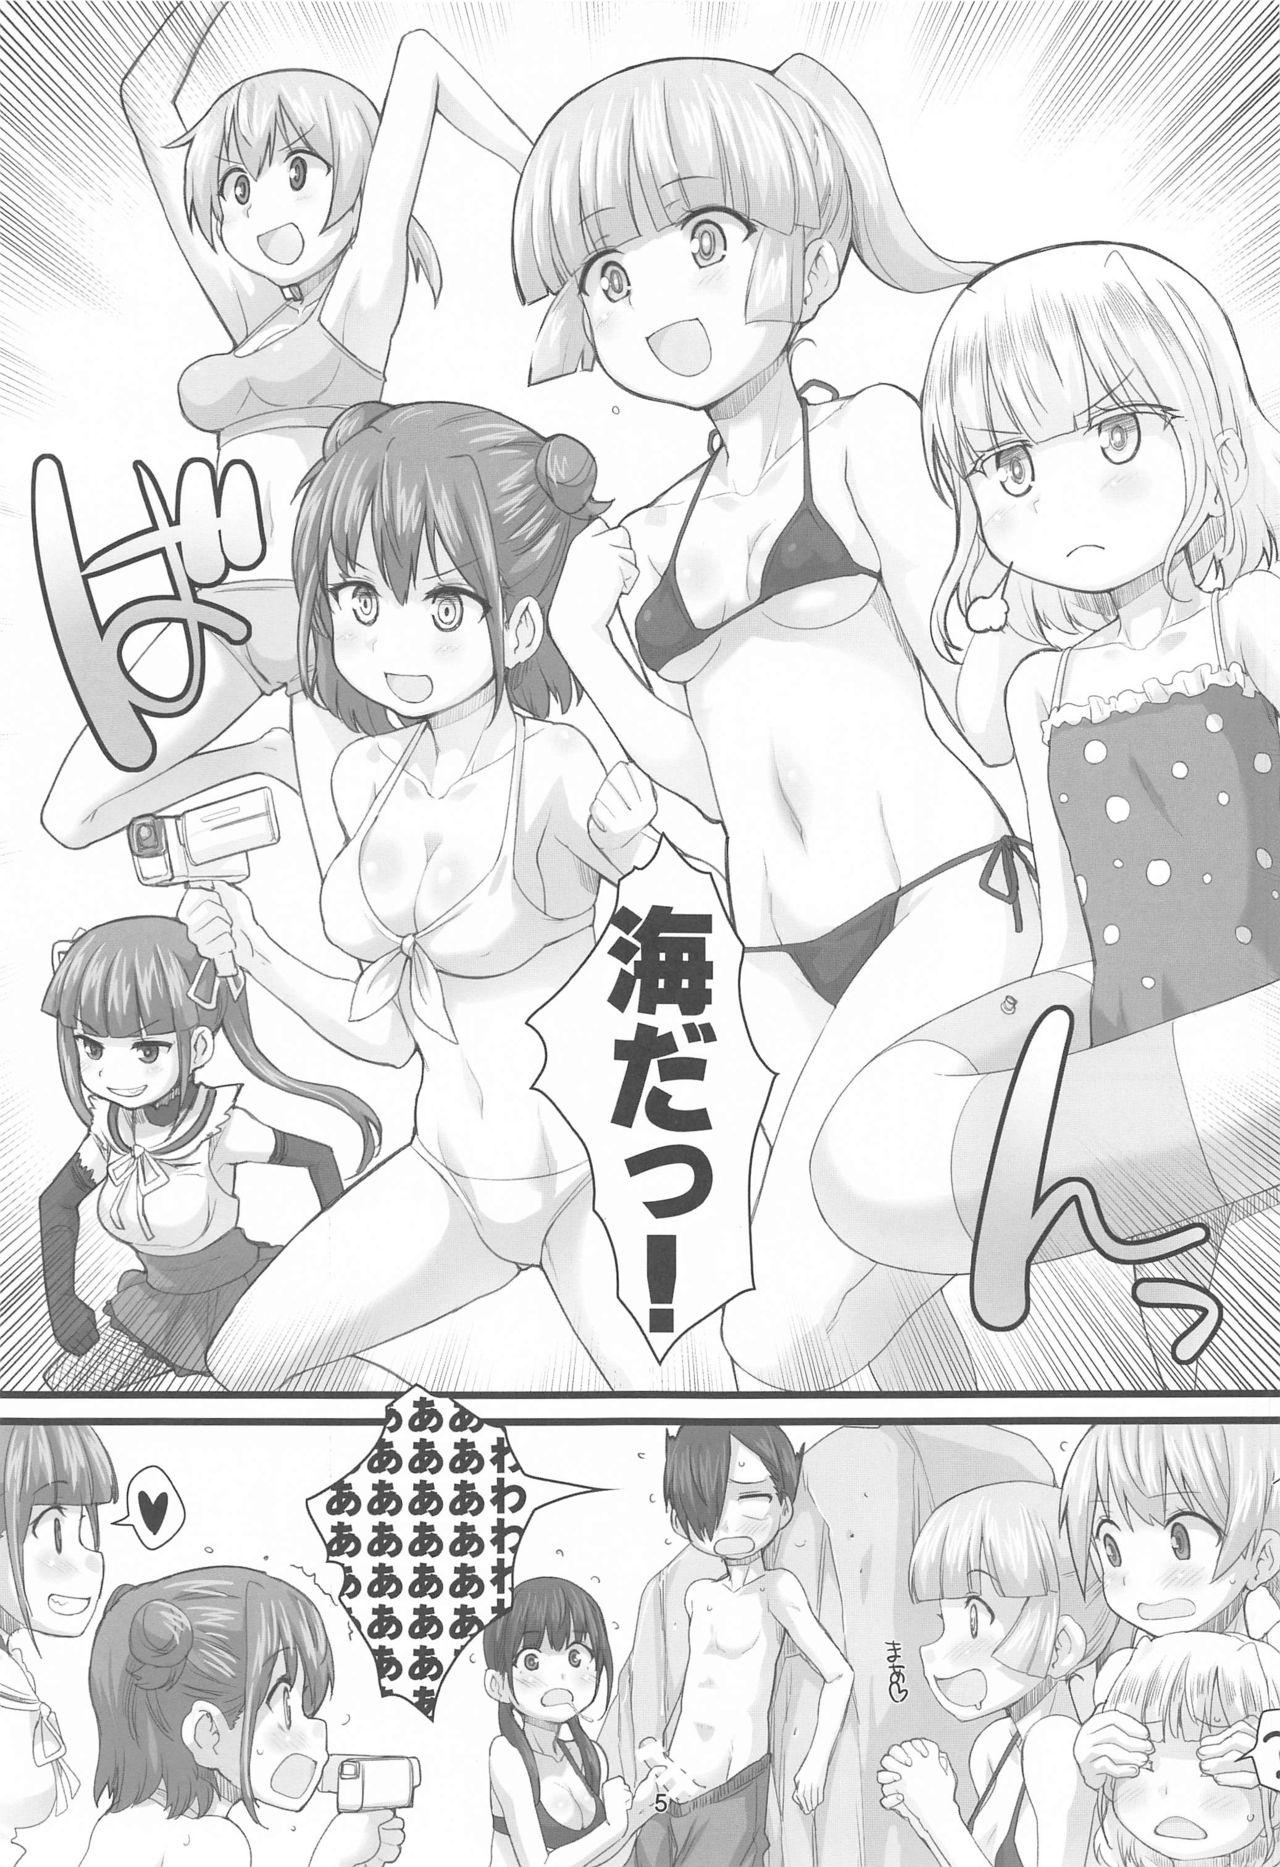 Hot Naked Women DAYDREAM OF SUMMER - Boku no kokoro no yabai yatsu Porno - Page 4